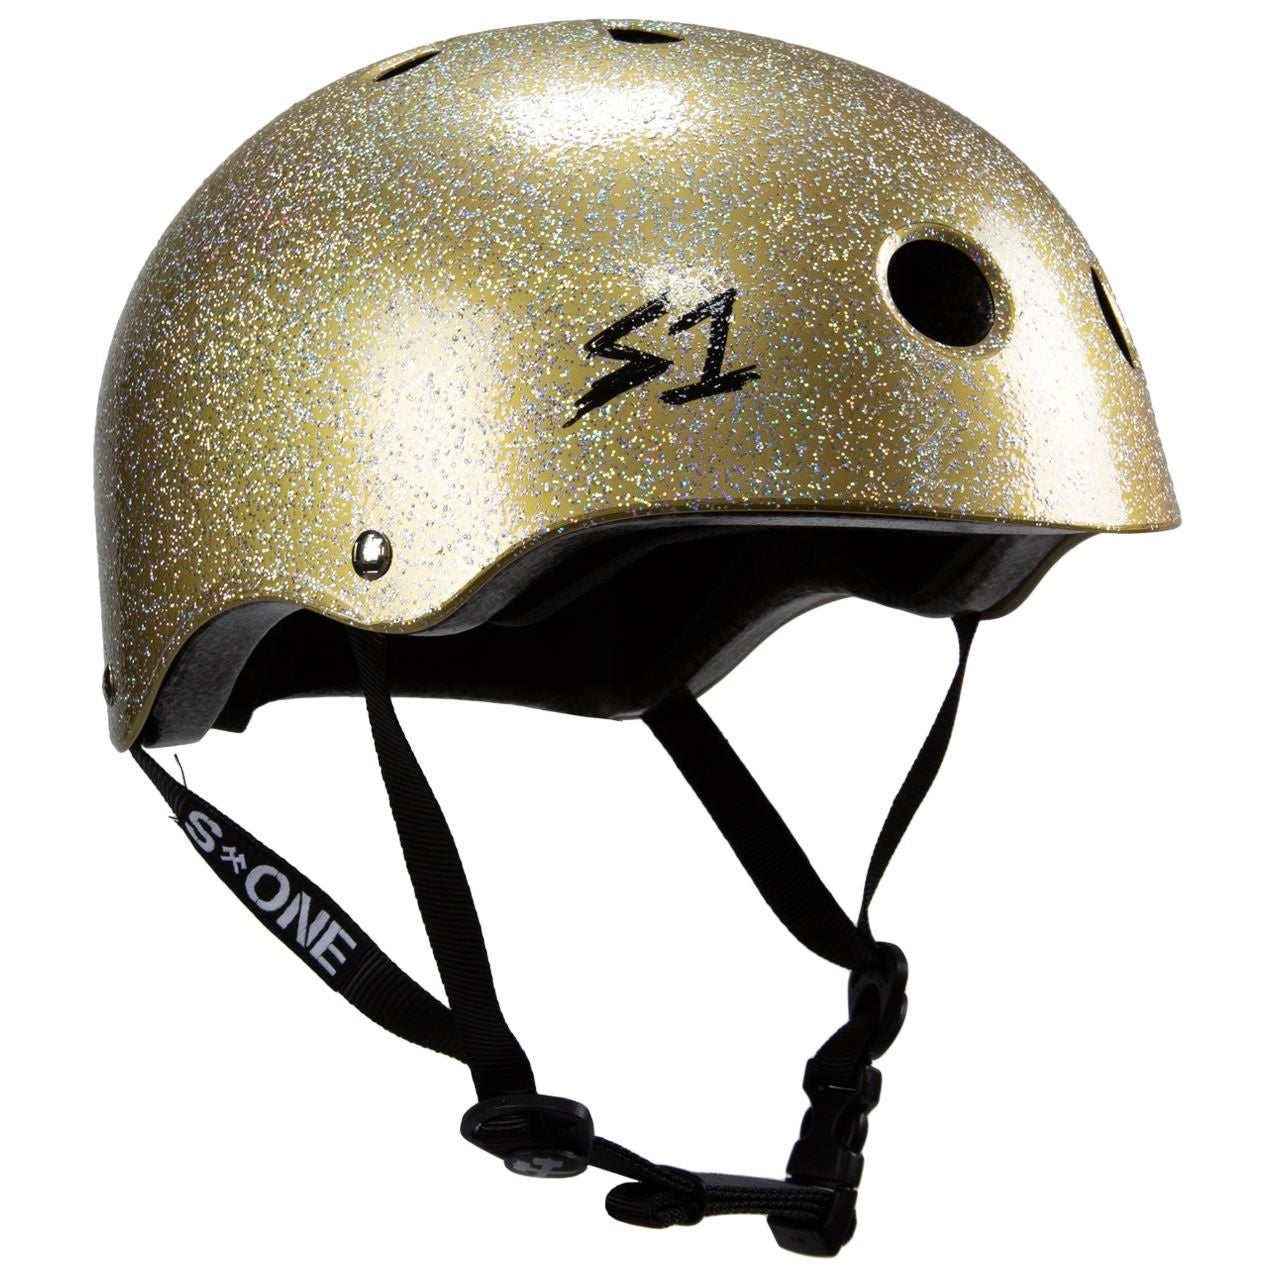 S1 Lifer Helmet - Double Gold Glitter